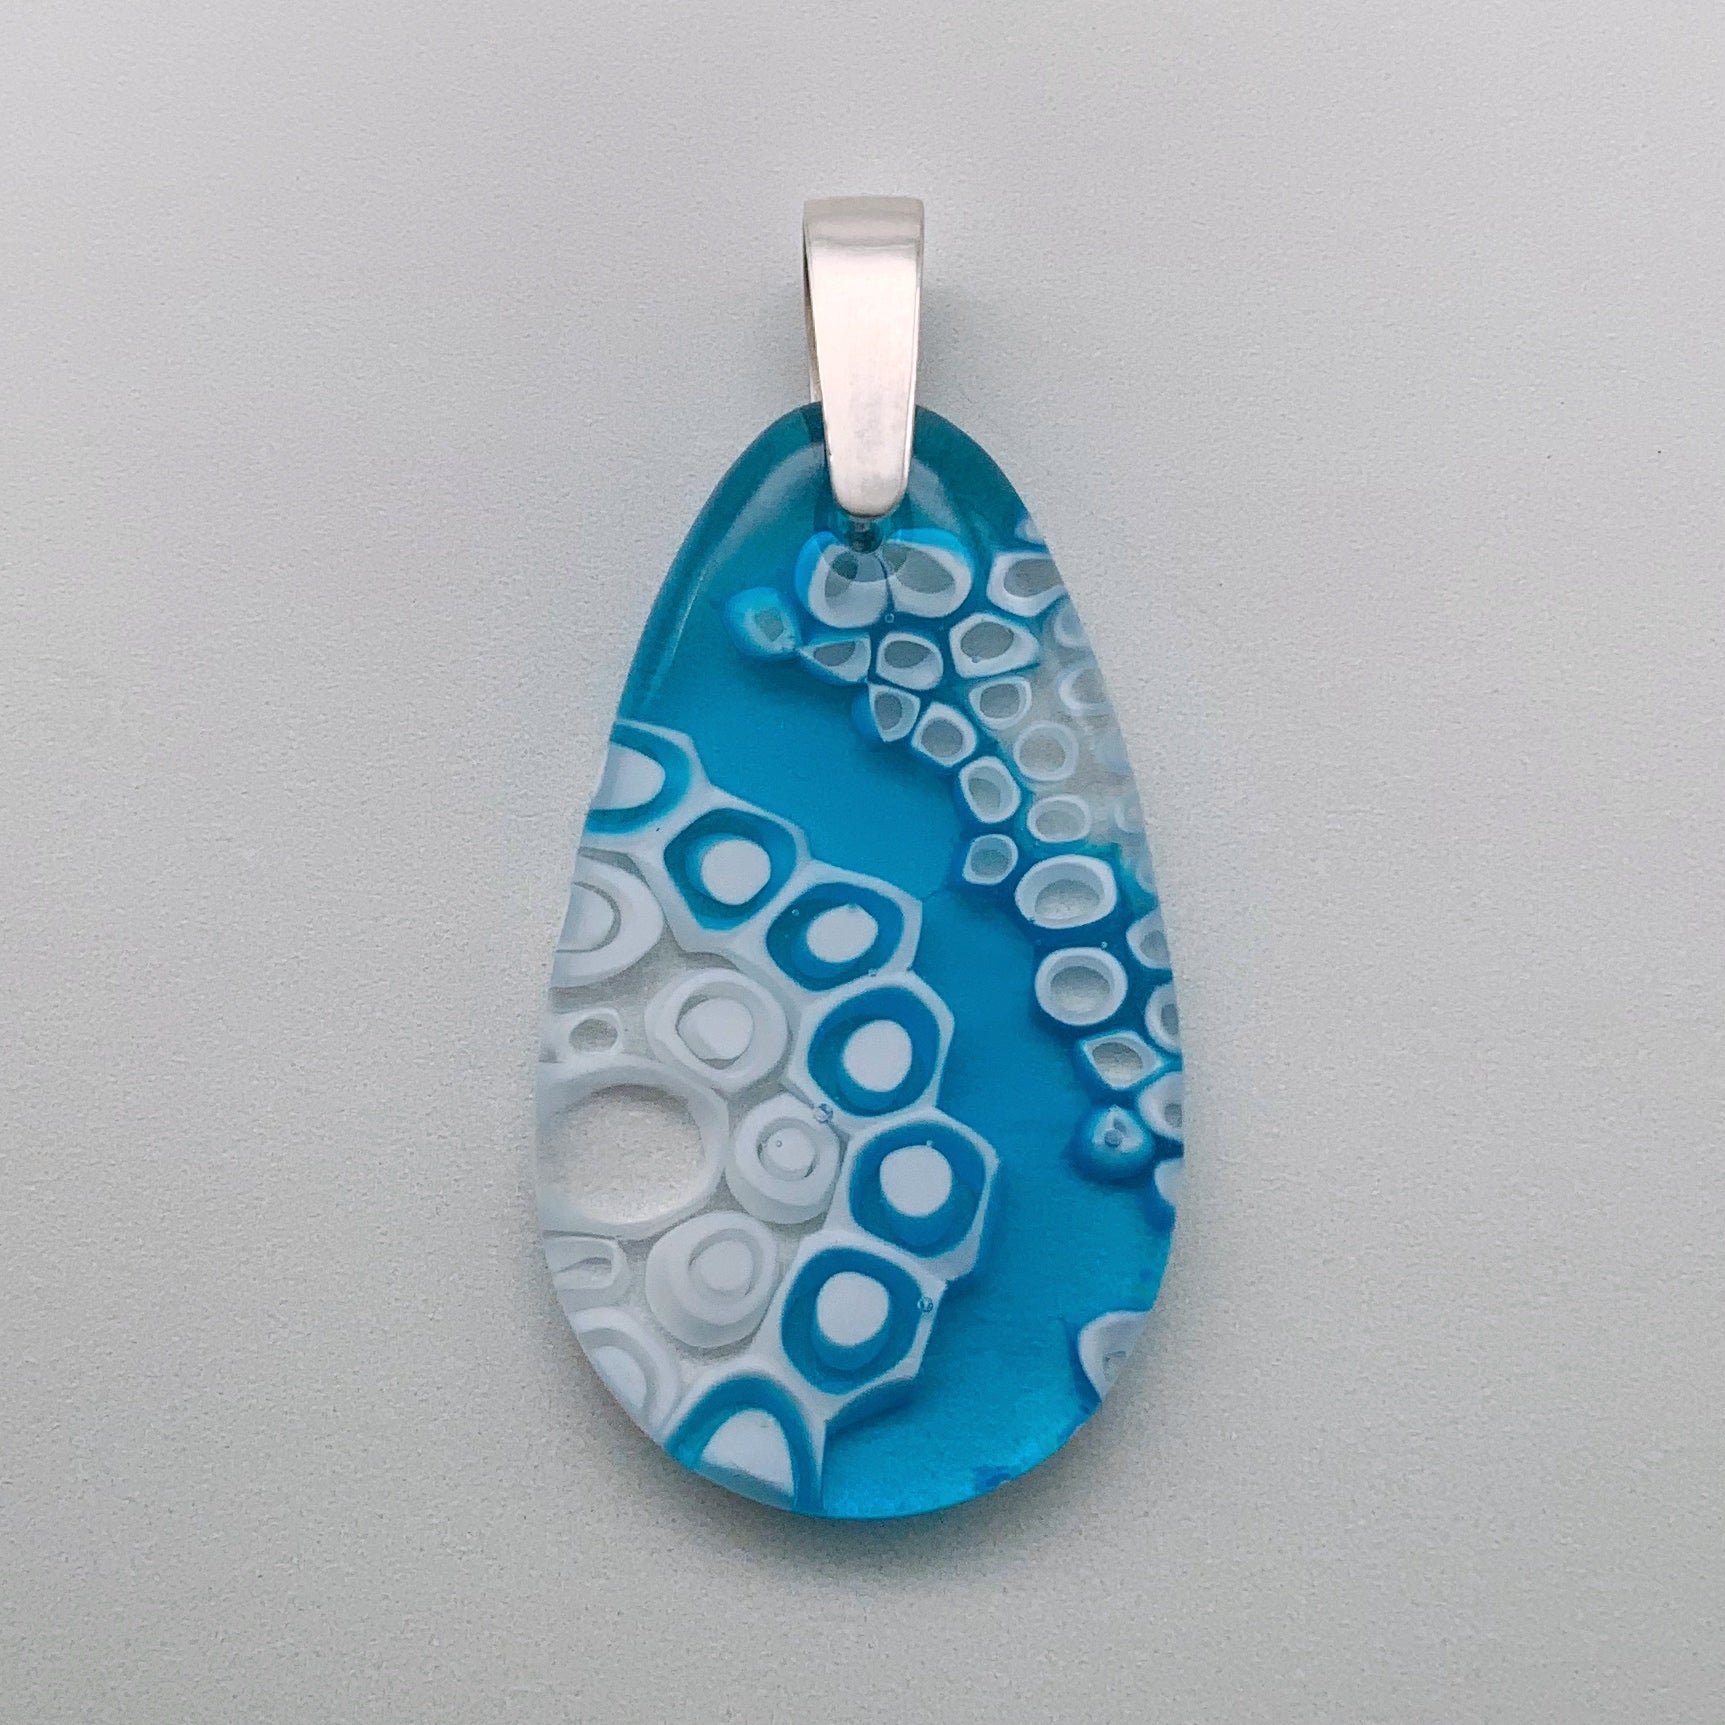 Murrini oceana glass drop pendant - lined